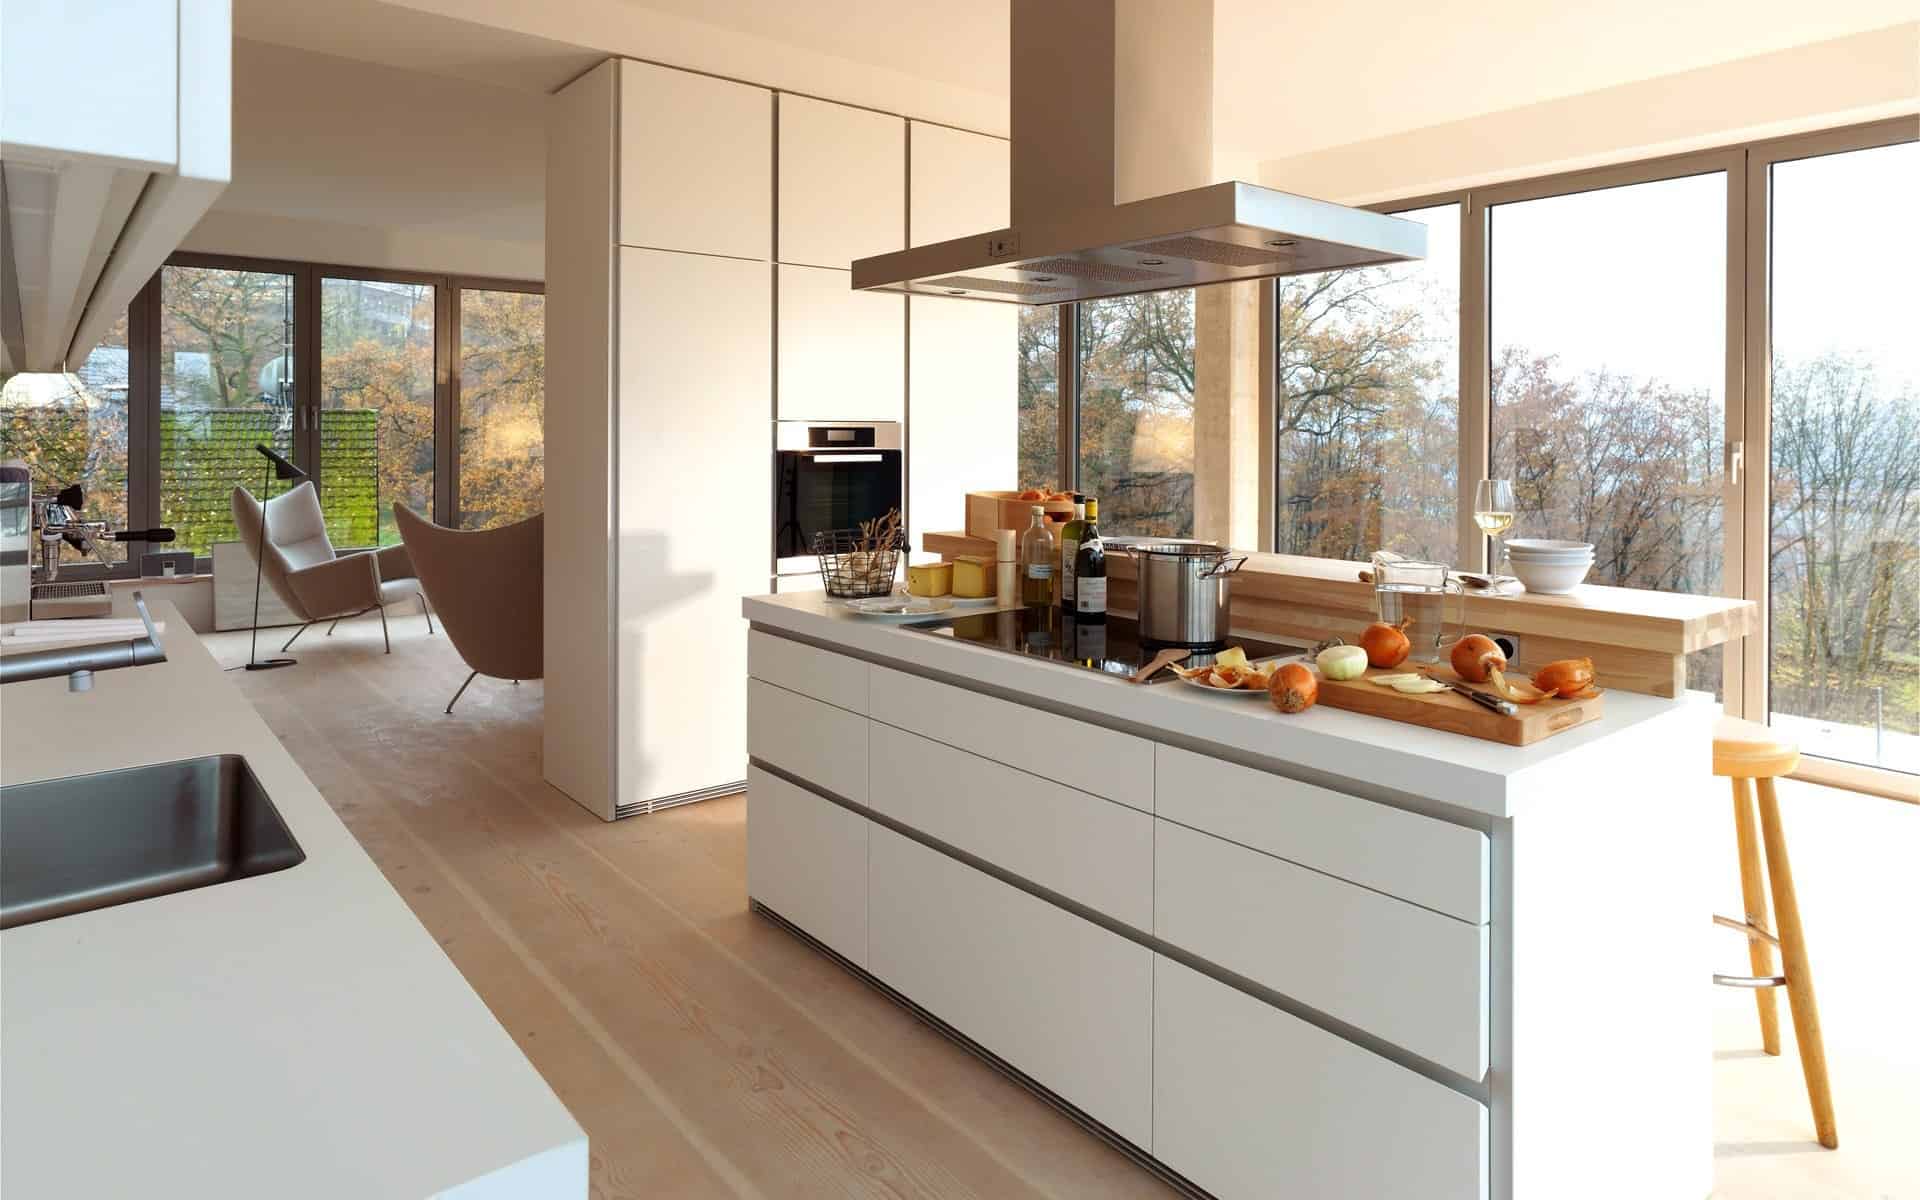 modern-kitchen-kitchen-dream-kitchen-overview-outdoor-with-bay-in-dream-kitchen-6-ways-to-build-a-dream-kitchen-based-on-desire